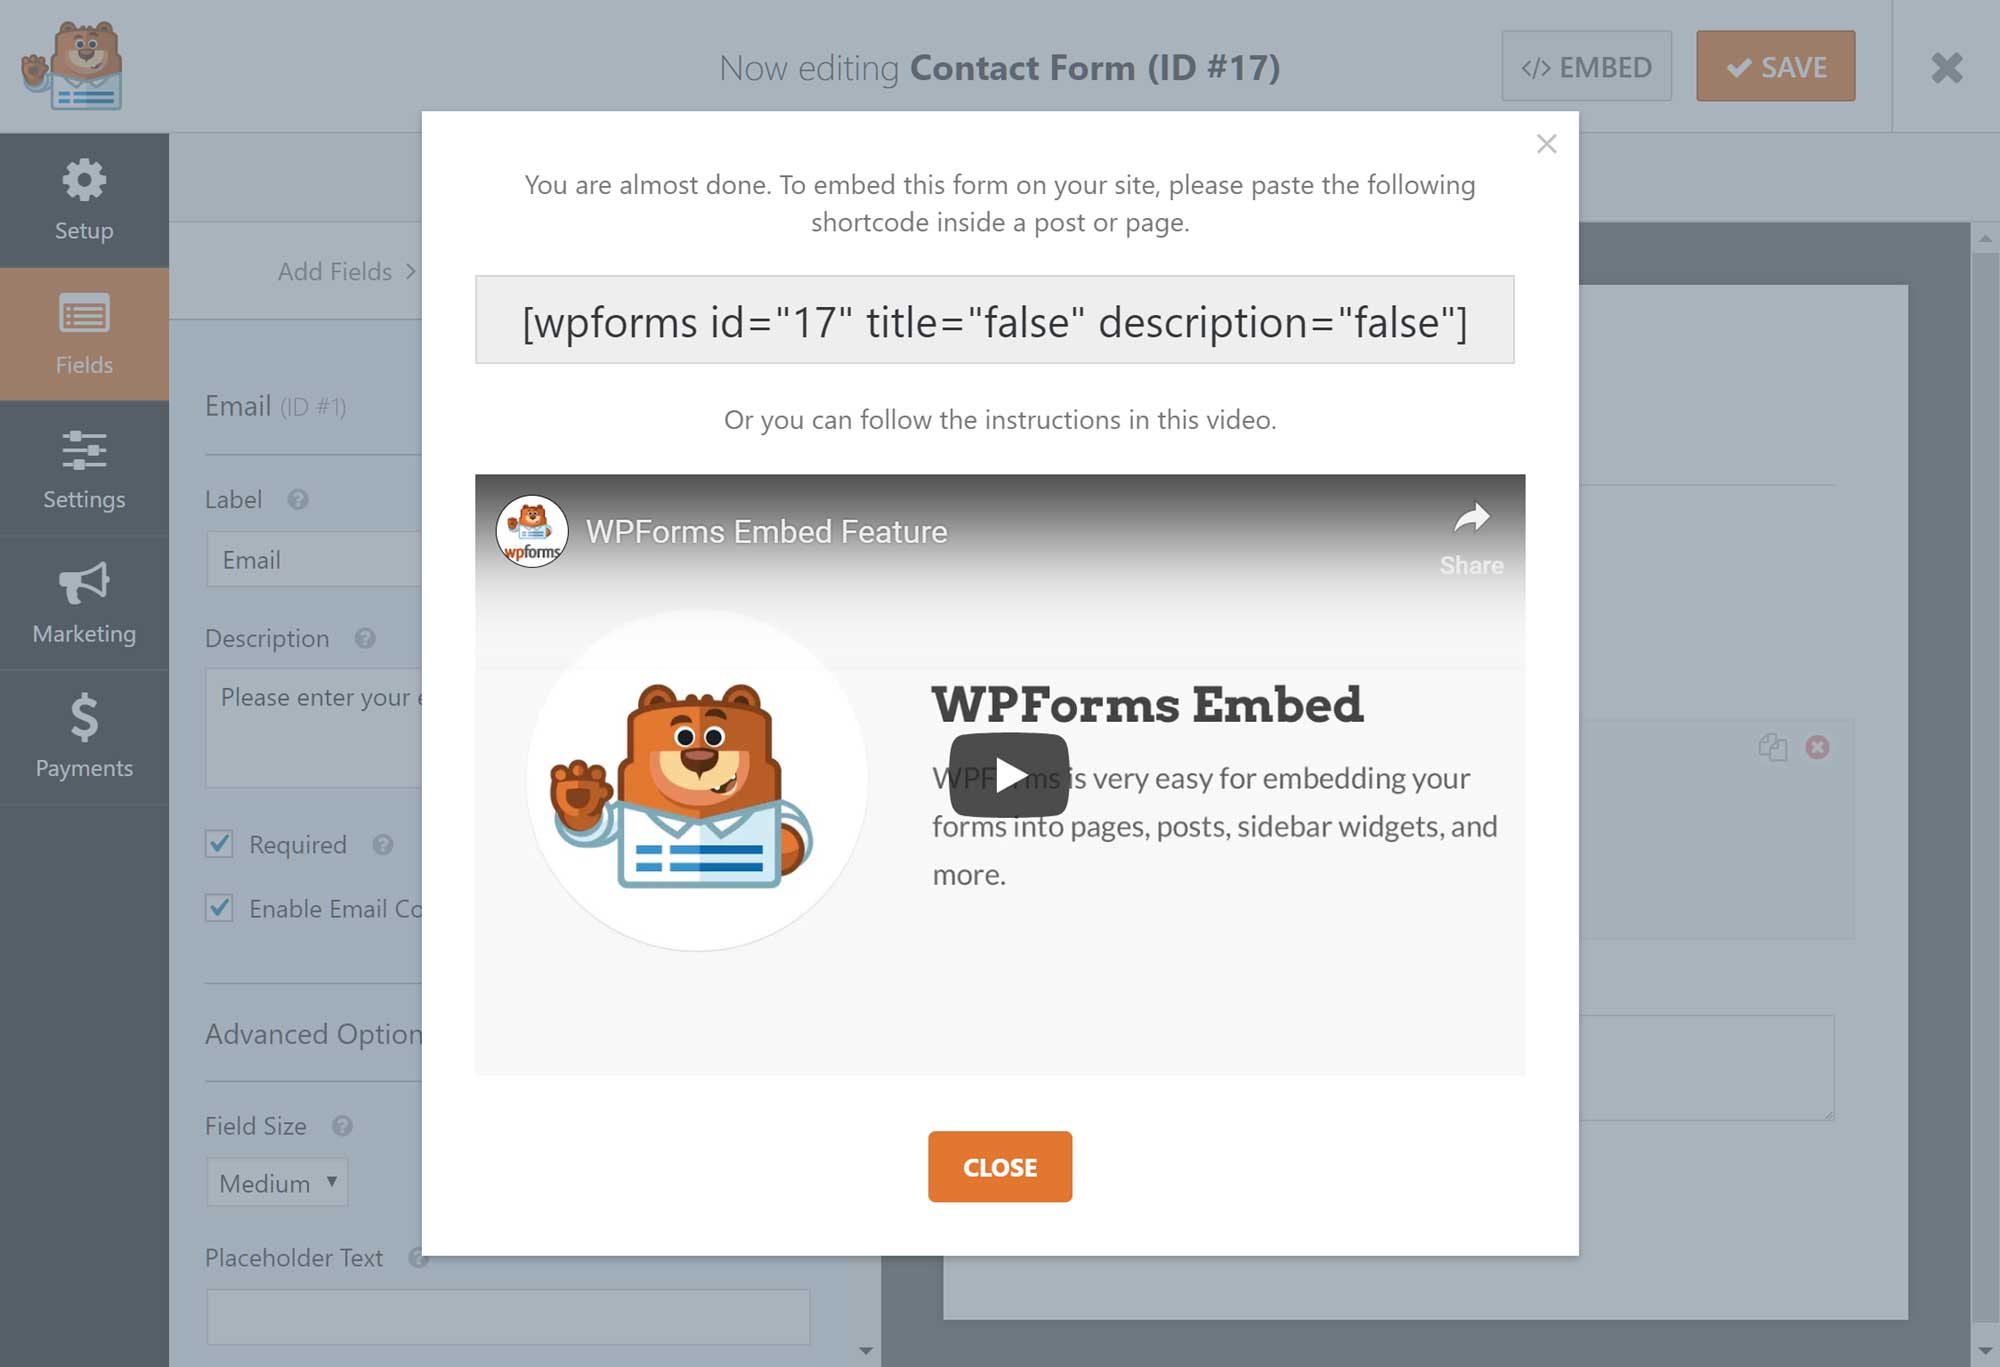 The WPForms shortcode